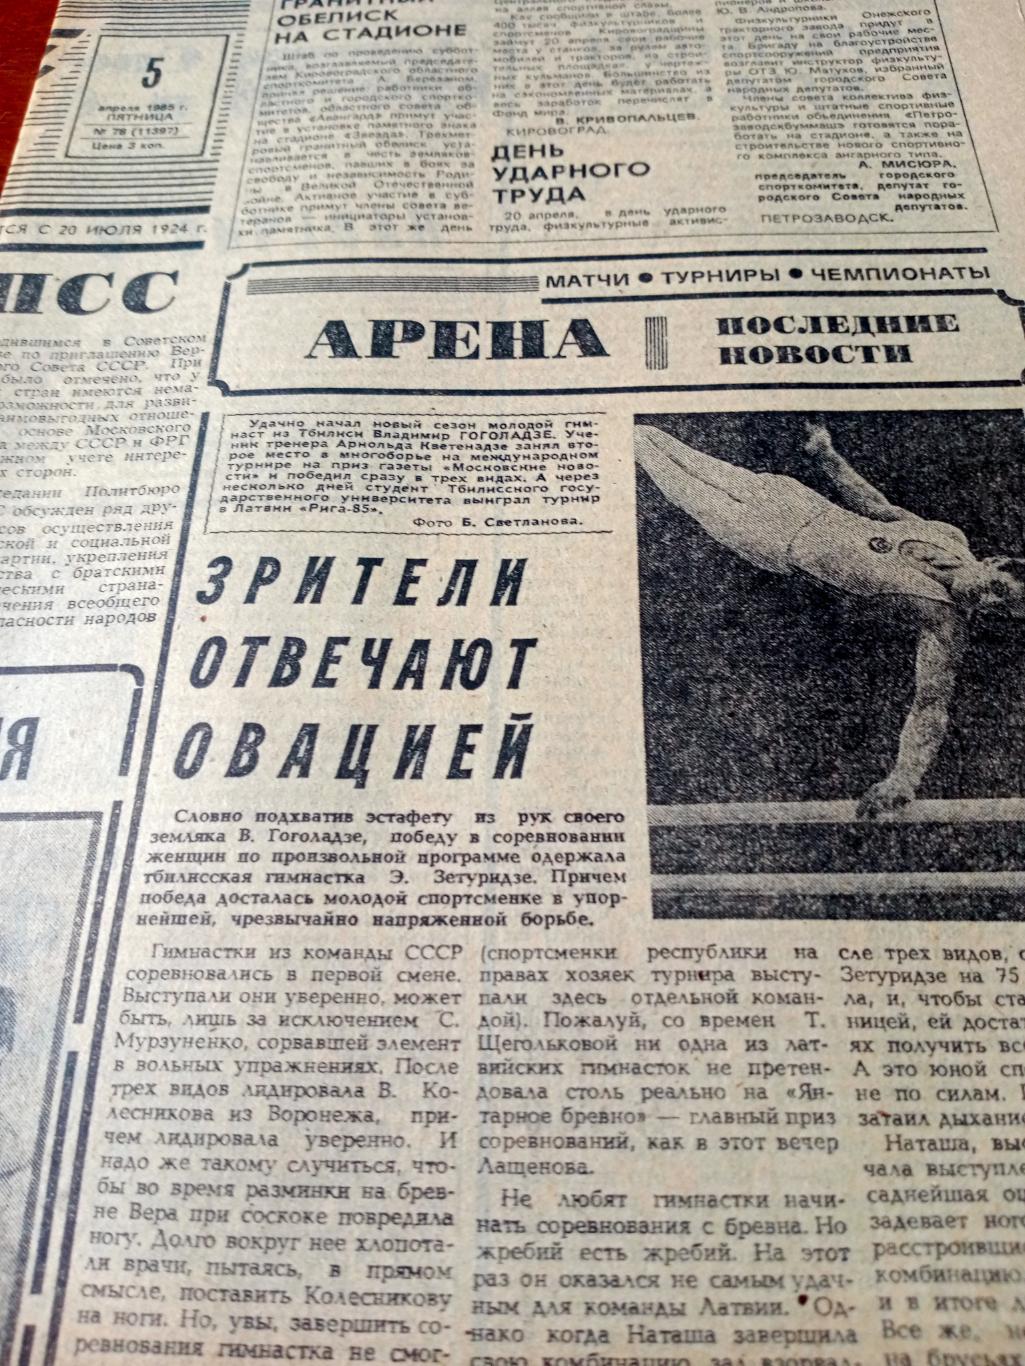 Юбилей общества Спартак. Советский спорт. 1985 год. 5 апреля